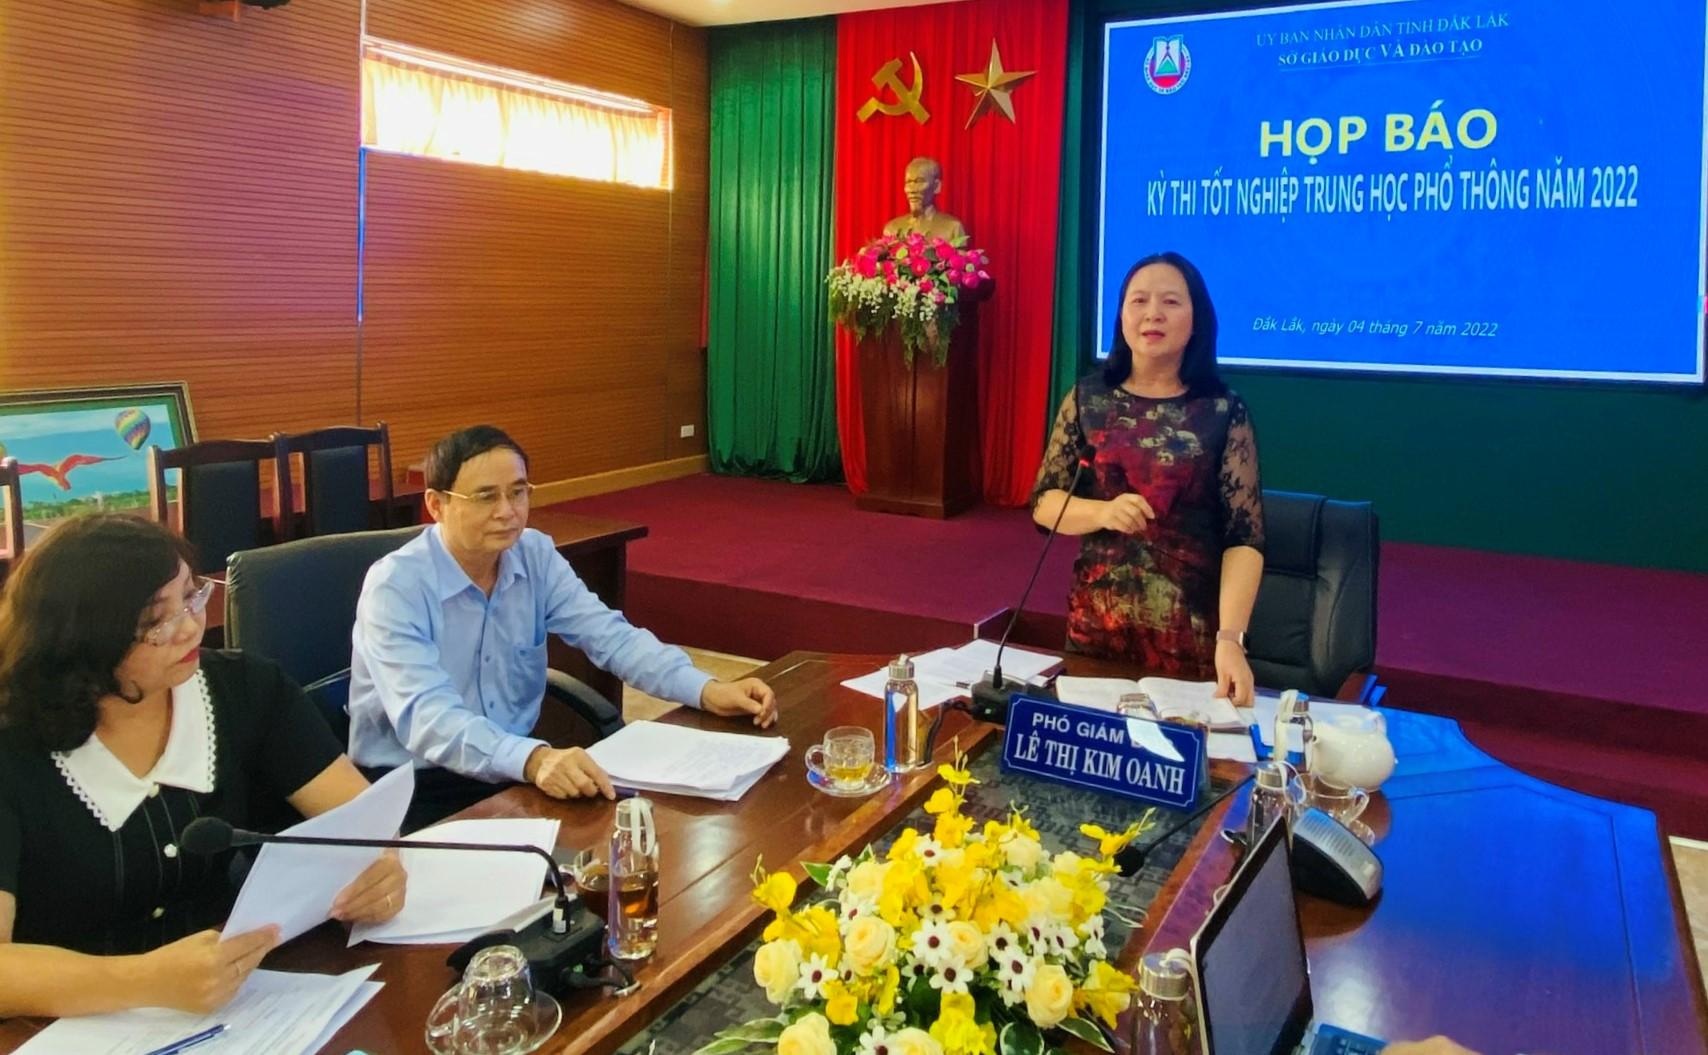 Đắk Lắk có 20.422 thí sinh đăng ký dự thi, thí sinh lớn nhất 49 tuổi - Giáo dục Việt Nam